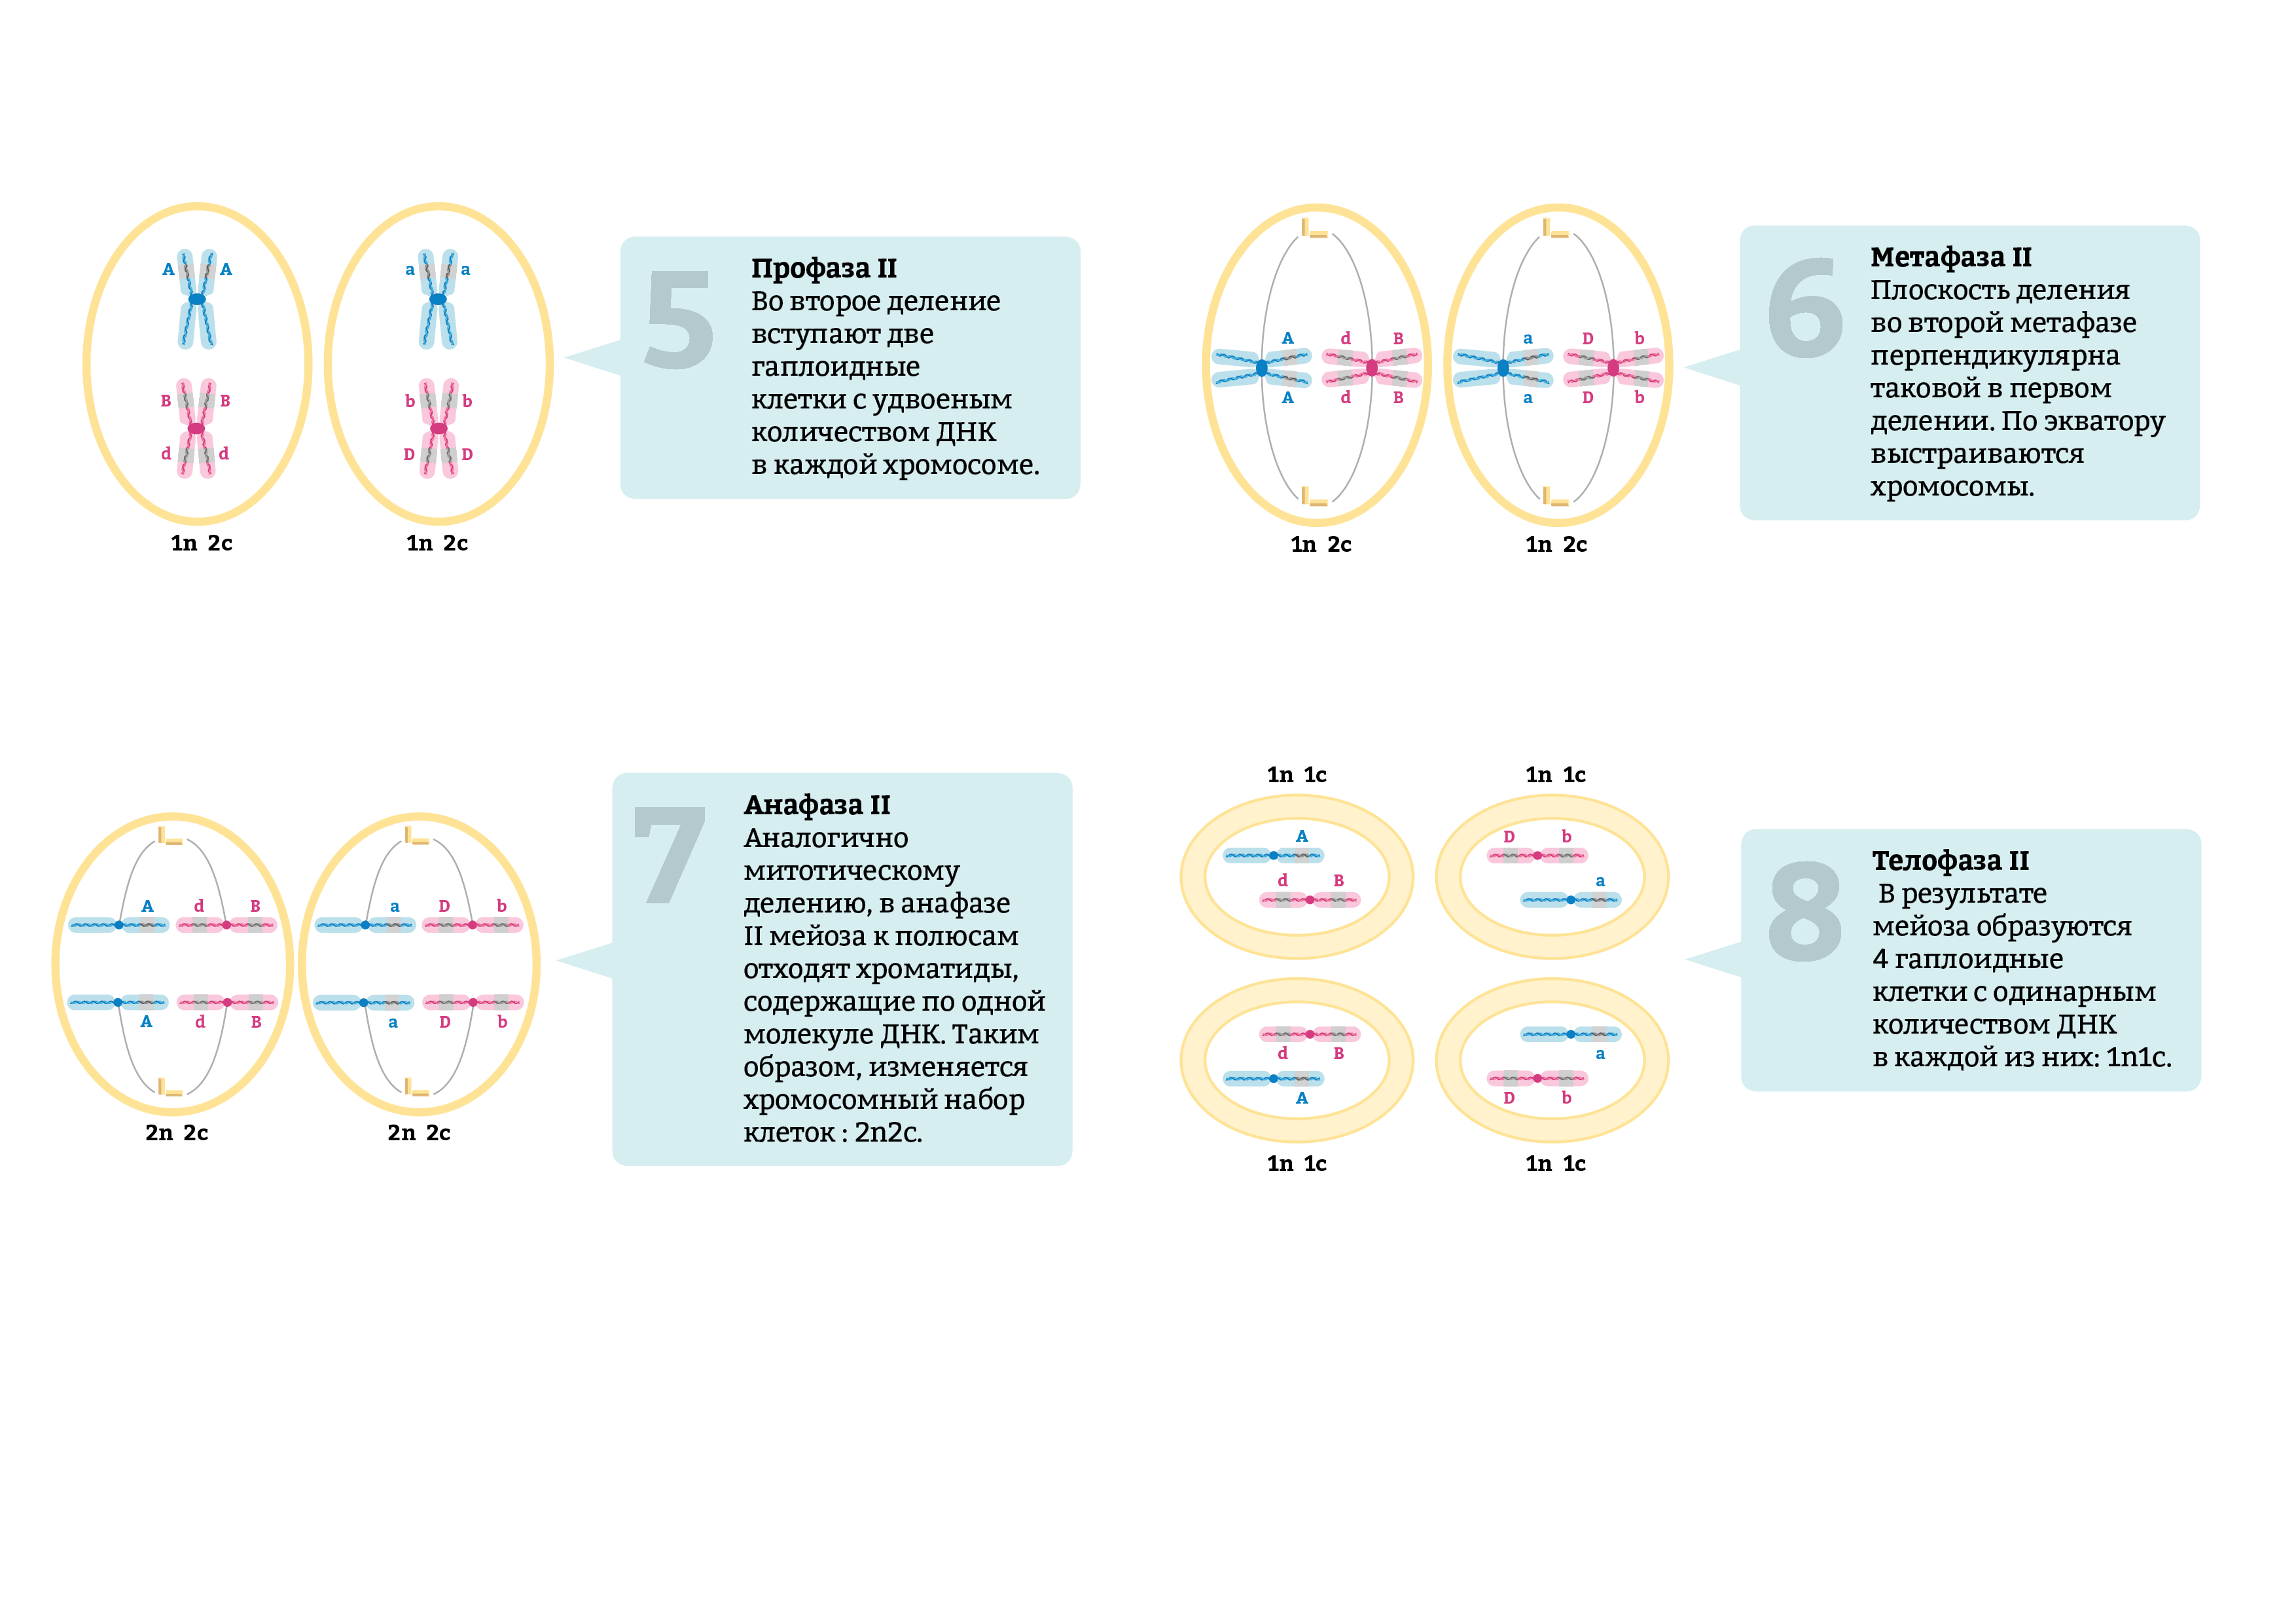 Каким номером на схеме обозначено мейотическое. Мейоз фазы таблица набор хромосом. Метафаза 2 мейоза набор хромосом. Первое деление мейоза набор хромосом. Набор хромосом в дочерней клетке мейоза 1.